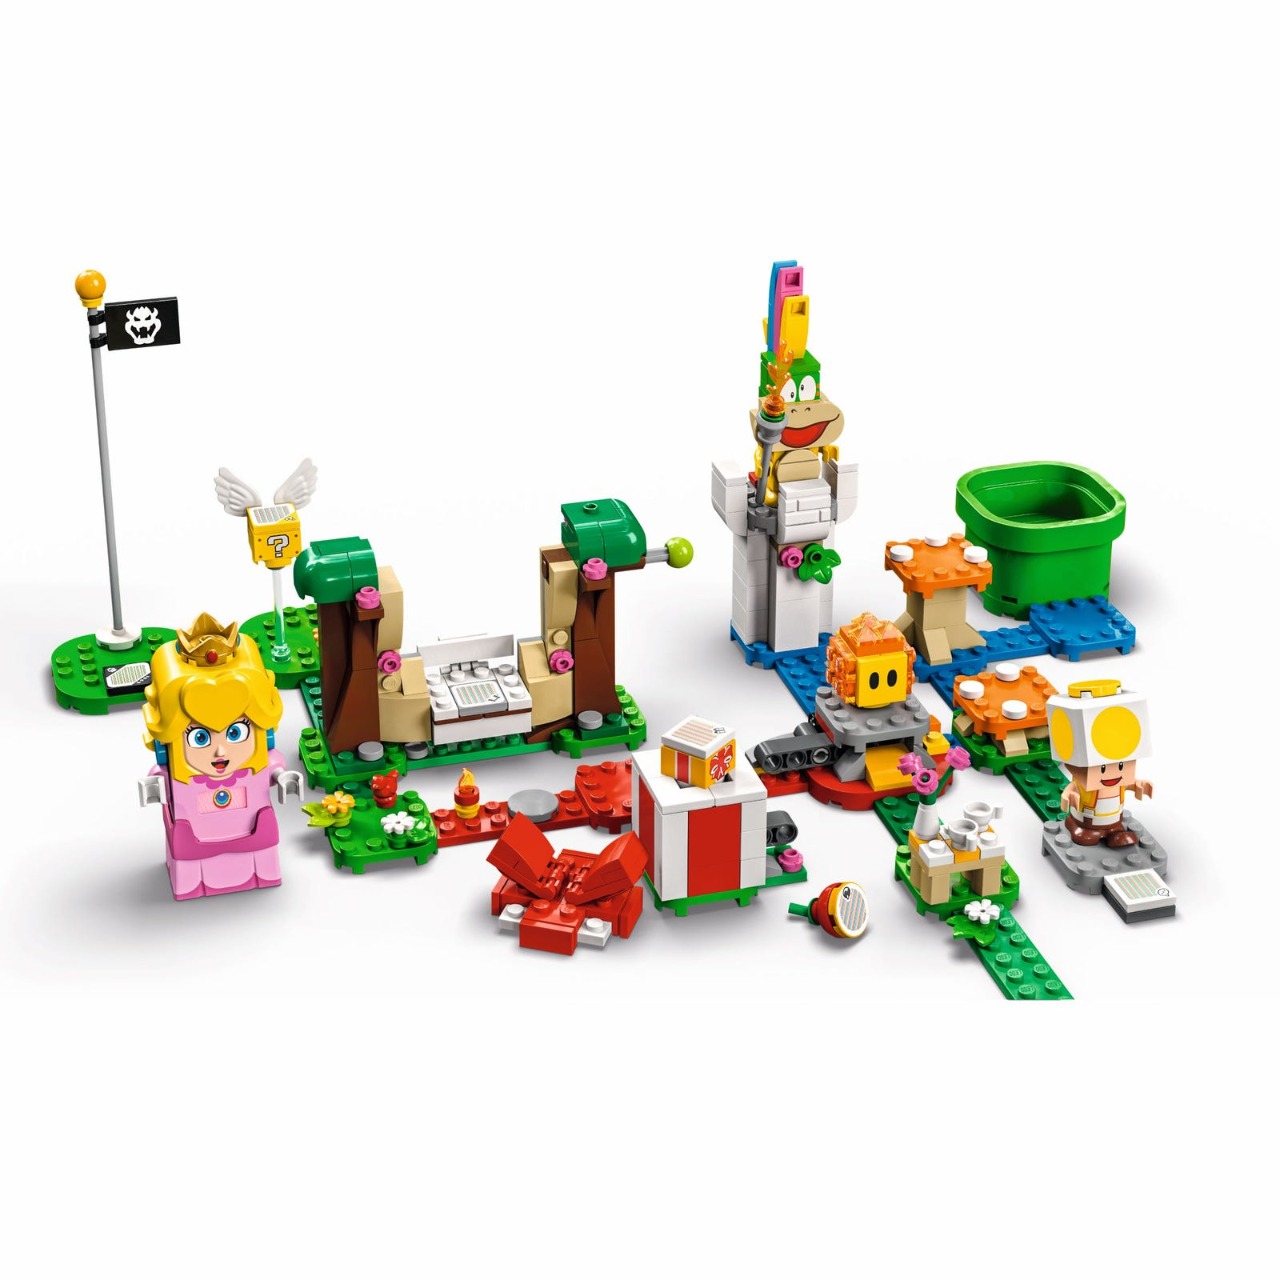 LEGO Super Mario Bros: La Princesa Peach, su castillo y más personajes llegan el 1 de agosto 2